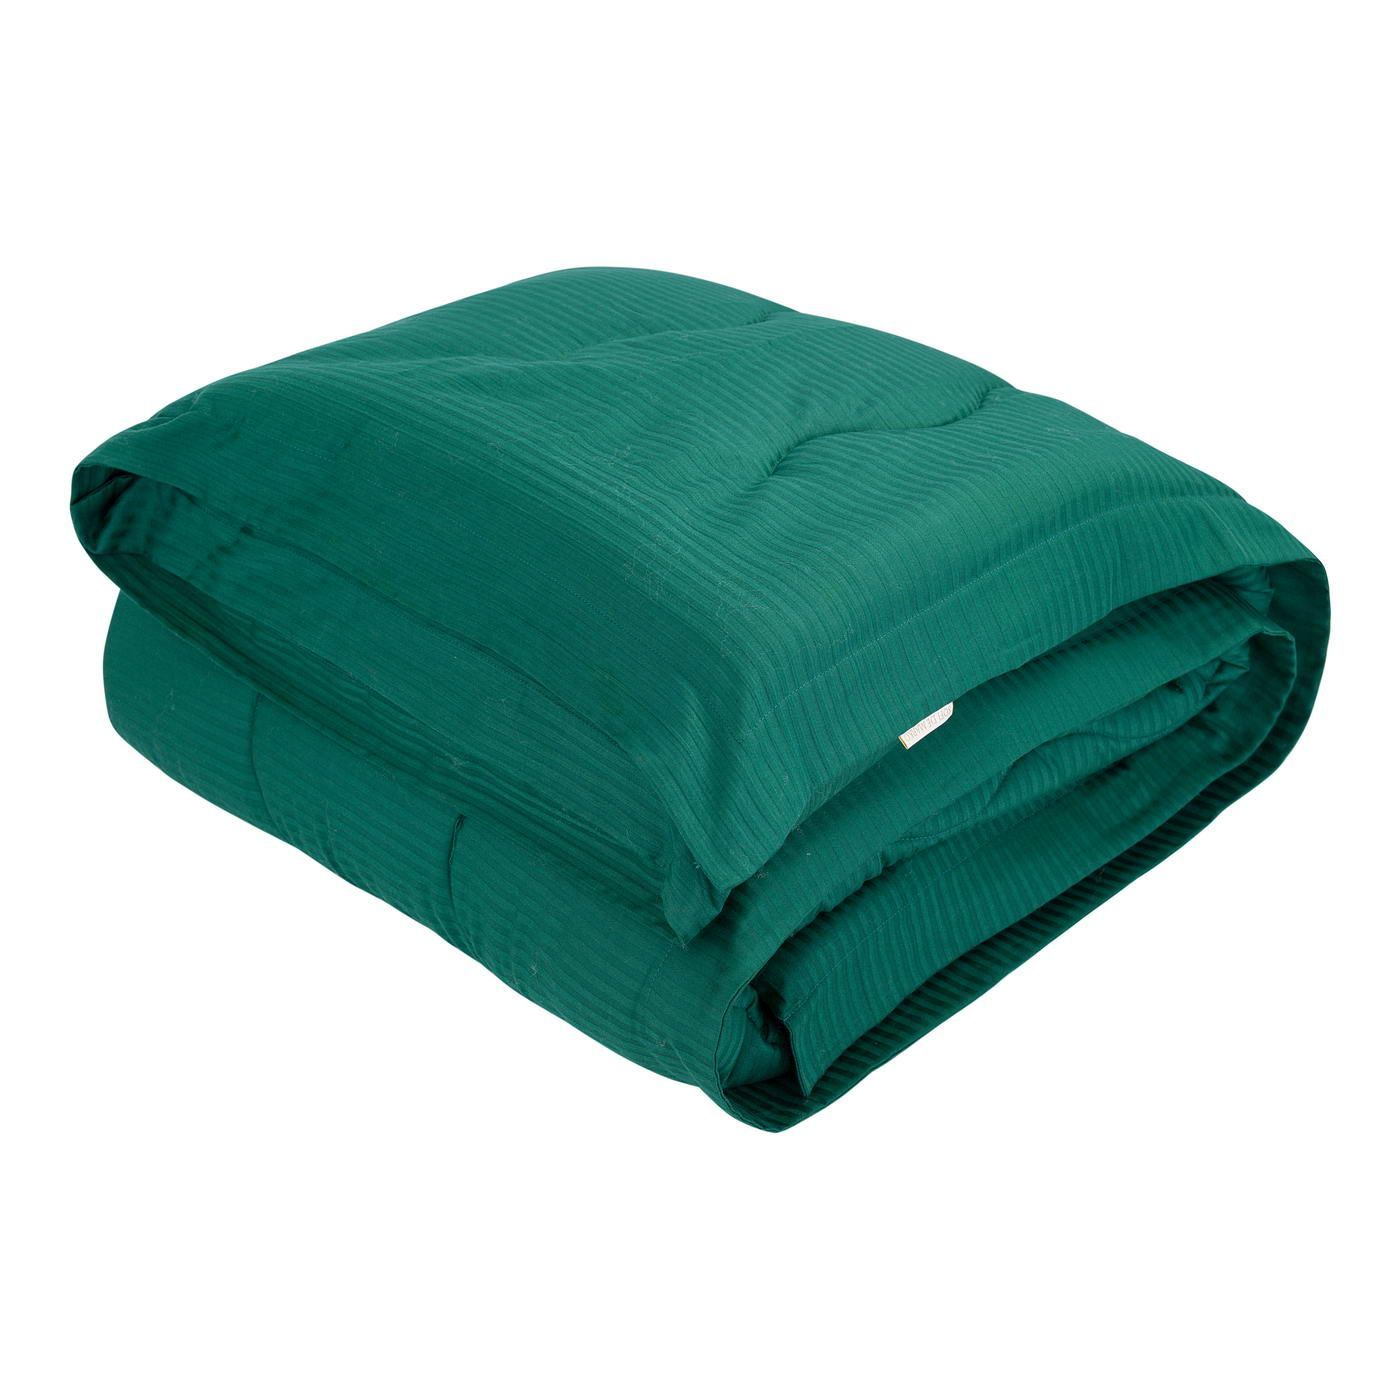 Одеяло-покрывало Тиффани цвет: малахитовый (195х220 см), размер 195х220 см sofi973245 Одеяло-покрывало Тиффани цвет: малахитовый (195х220 см) - фото 1